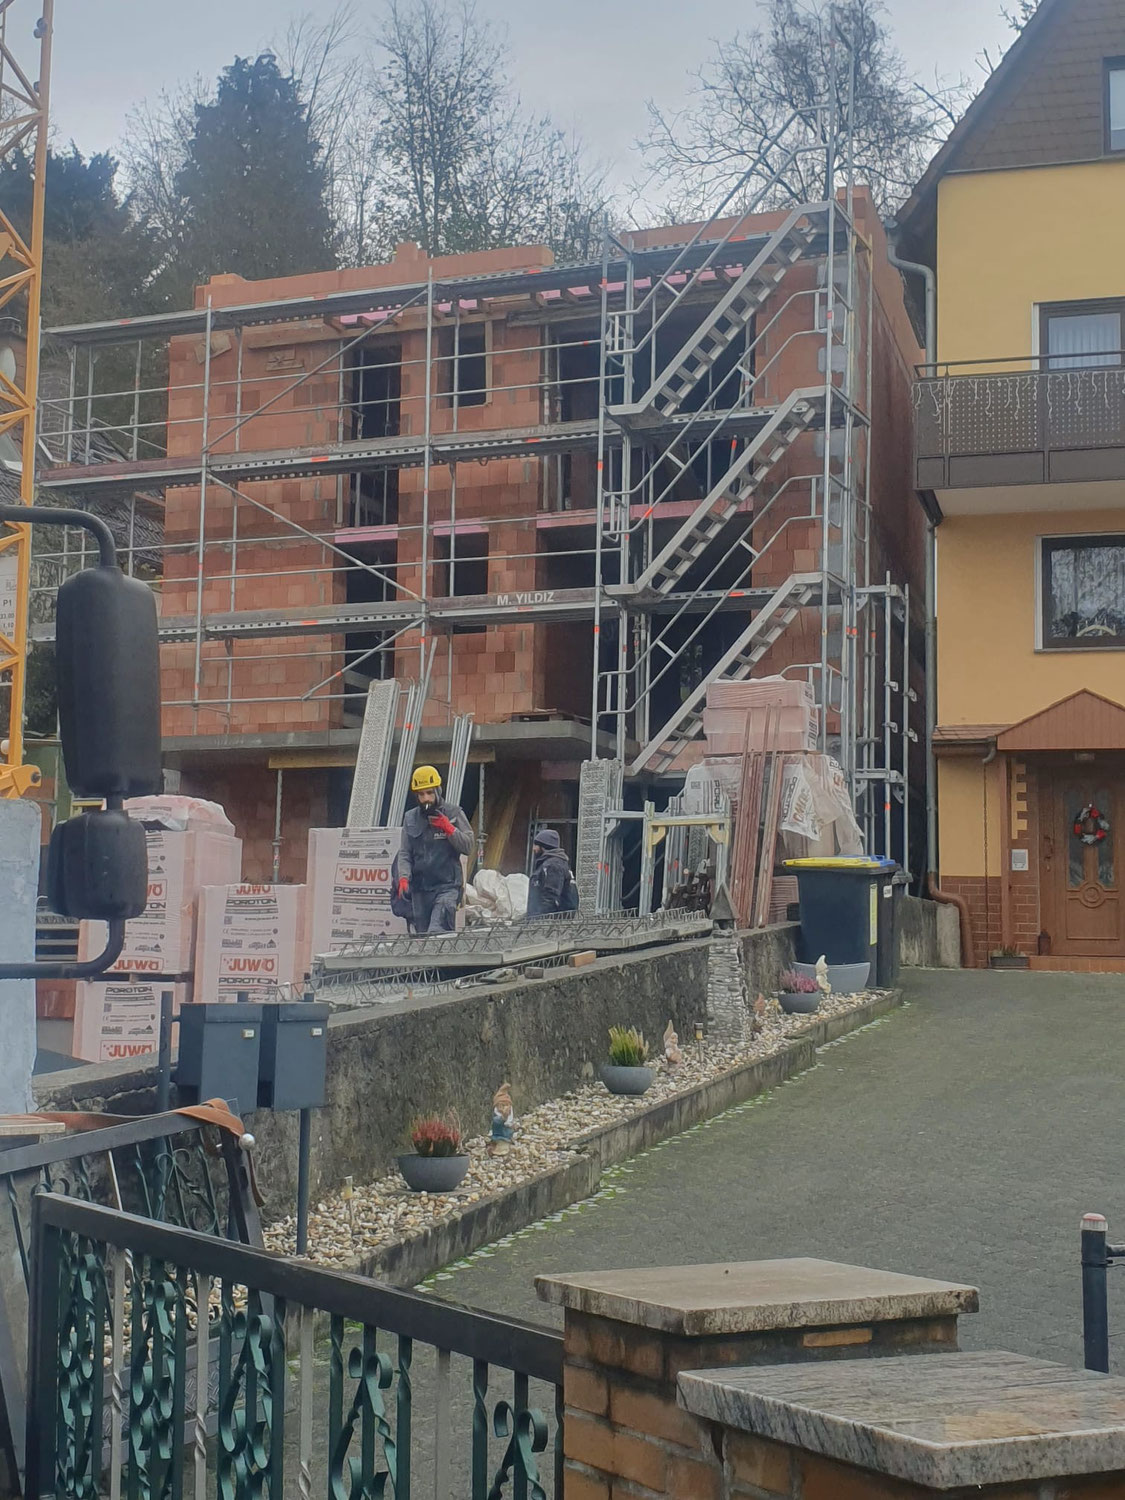 Neubau von zwei Einfamilienhäusern in Bad Vilbelage